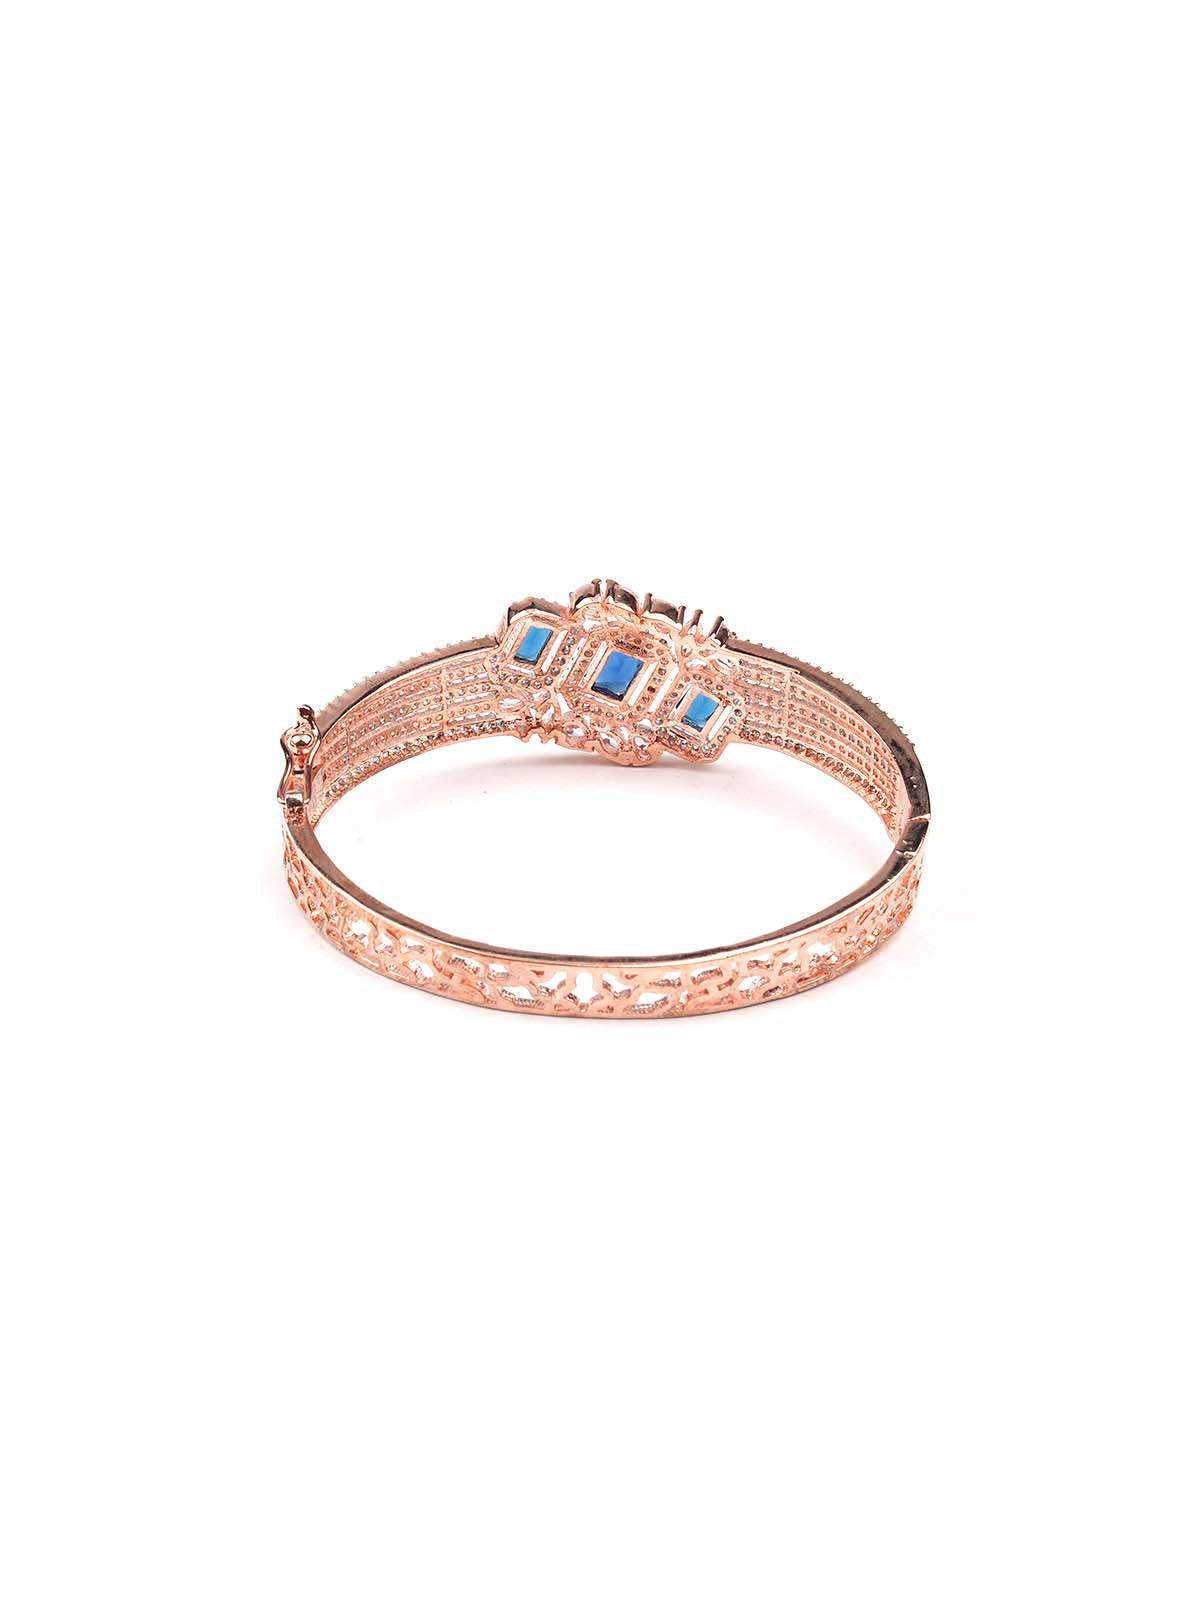 Stunning rose gold princess embellished bracelet - Odette